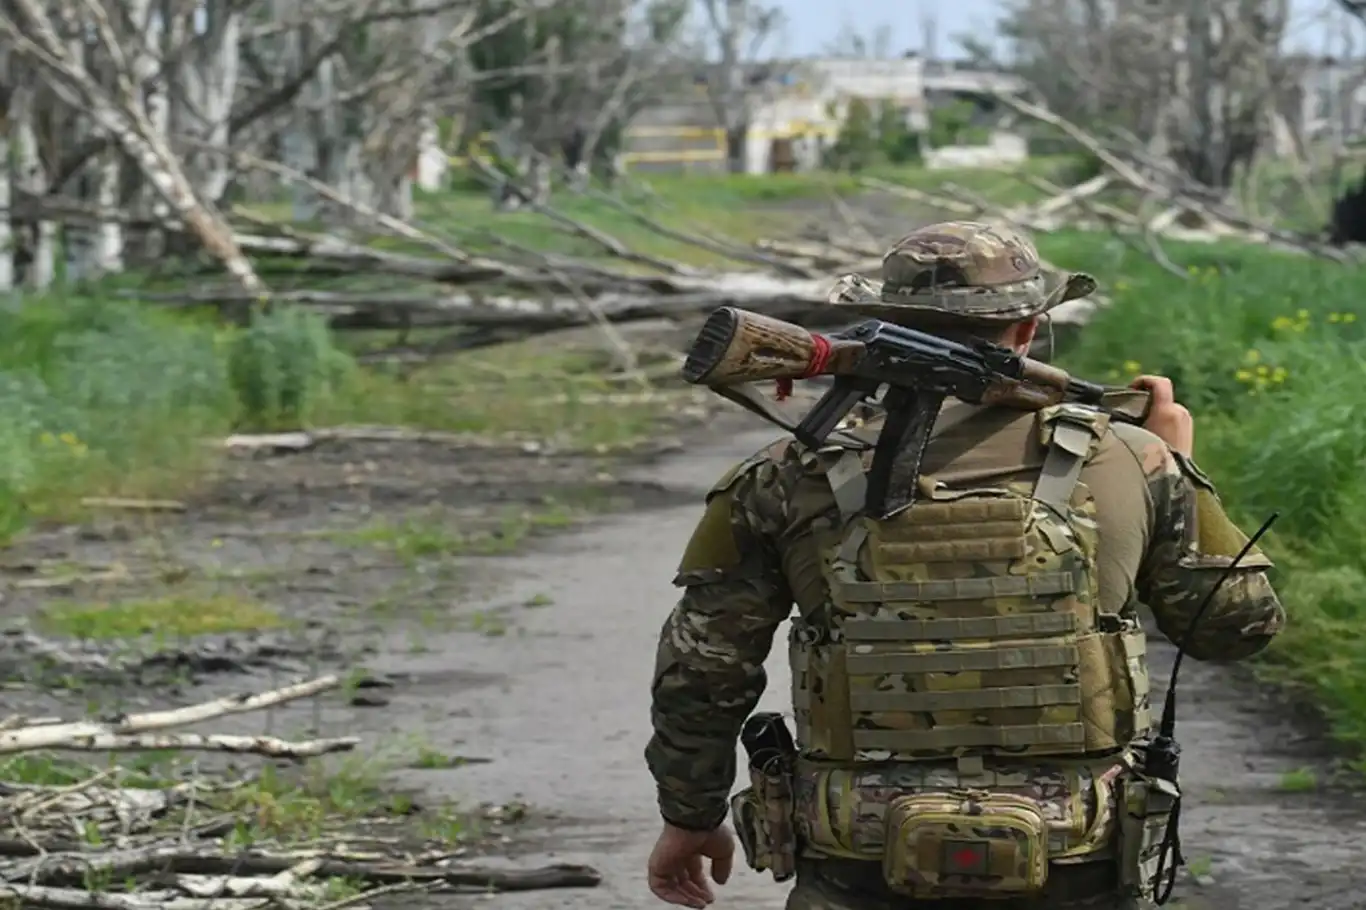  الجيش الروسي يعلن السيطرة على بلدة لوزوفاتسكوي في مقاطعة دونيتسك